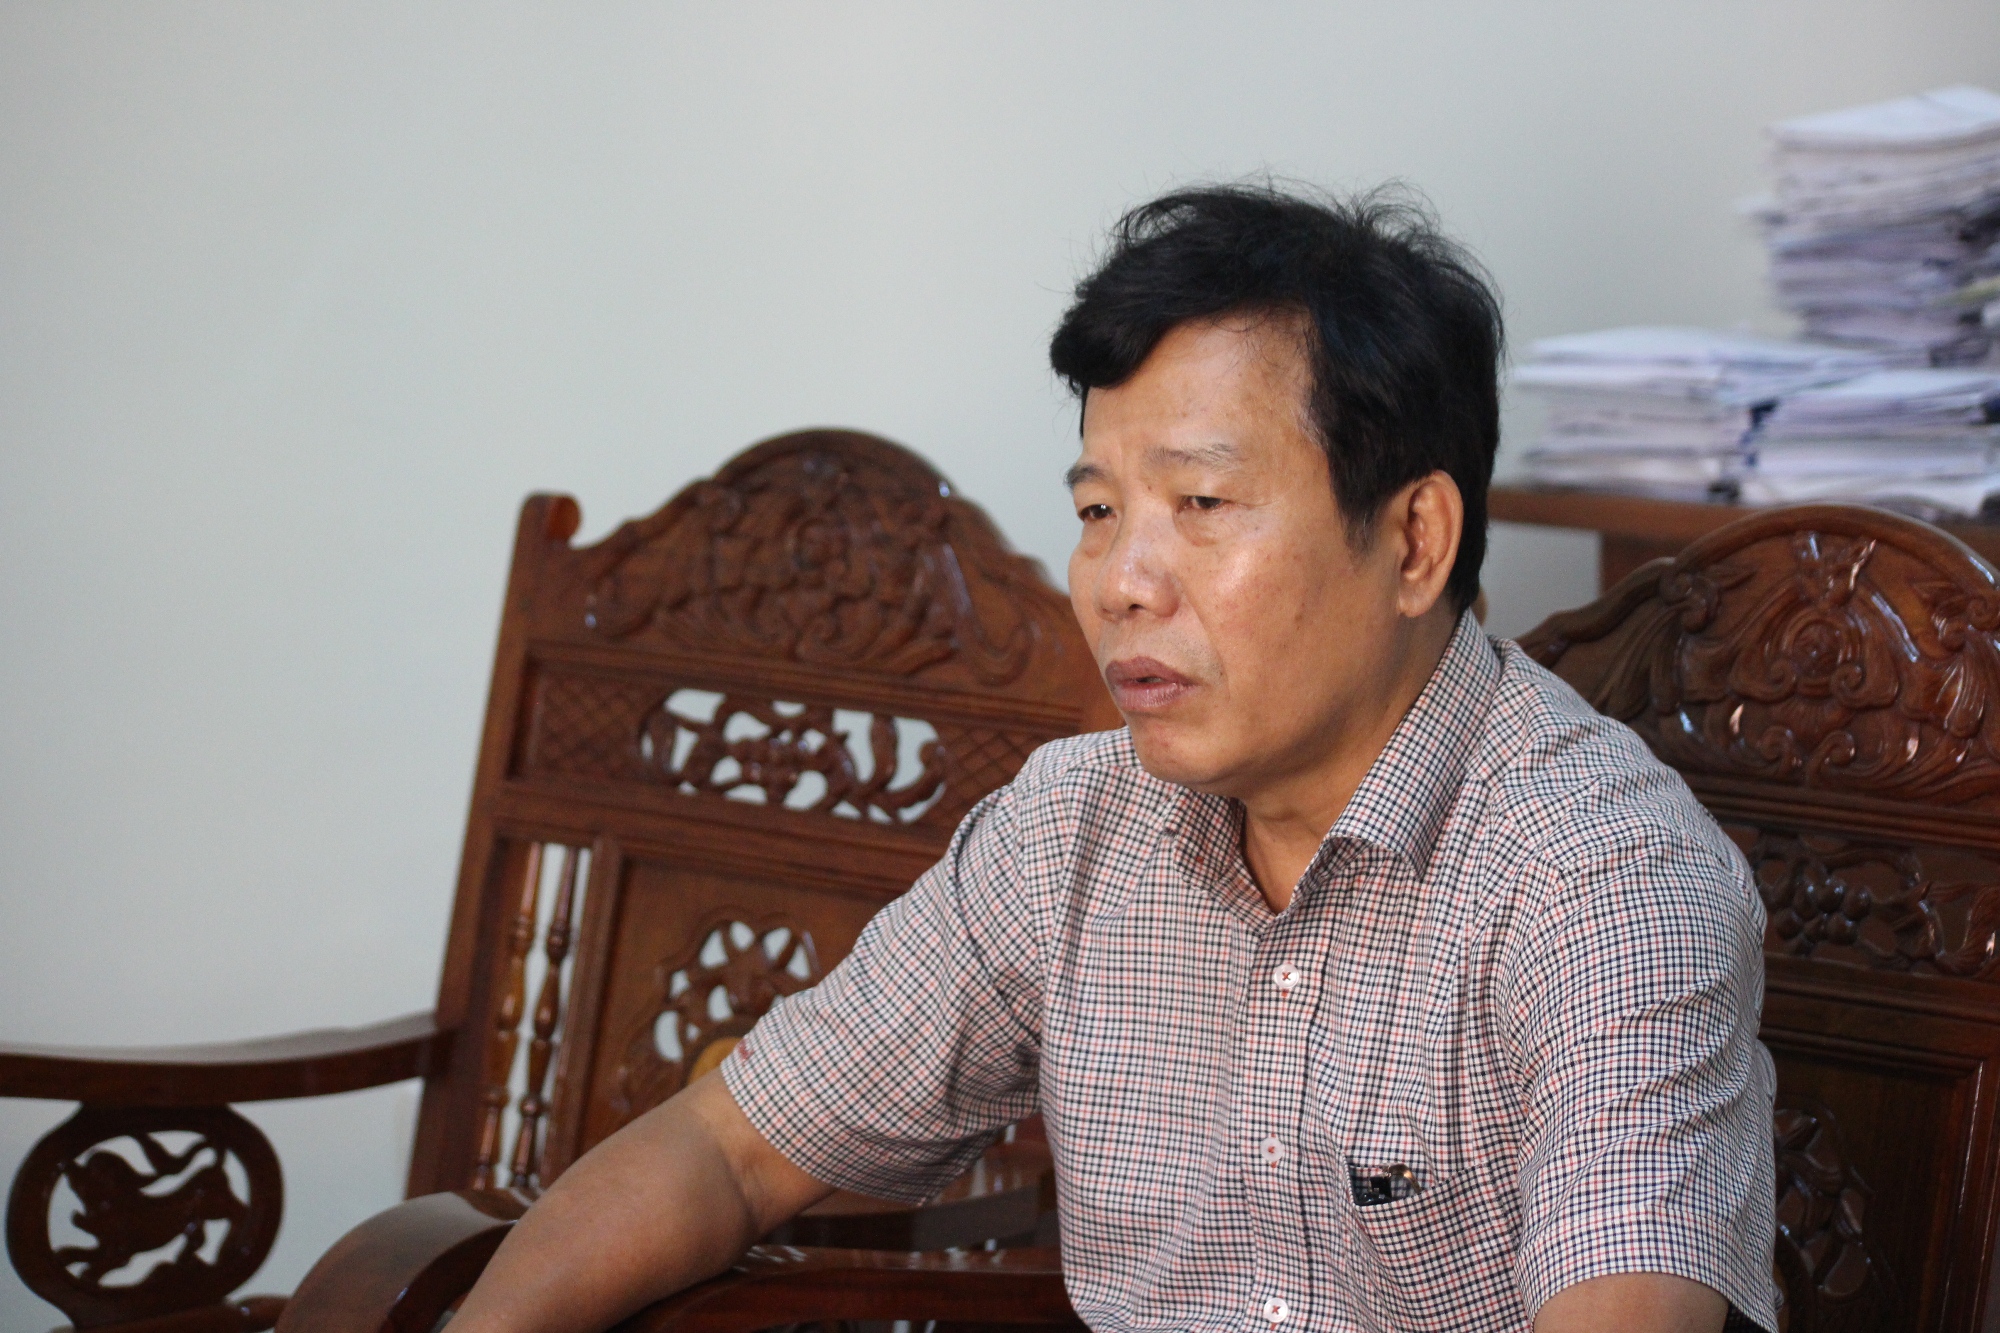 “Từ  năm 2009 đến nay, trên địa bàn có hơn 2.000ha rừng tự nhiên bị mất do thủy điện và các công trình, dự án”-ông Lê Minh Hưng, Phó Giám đốc Sở Nông nghiệp và Phát triển Nông thôn tỉnh Quảng Nam. (Ảnh: Vietnam+)